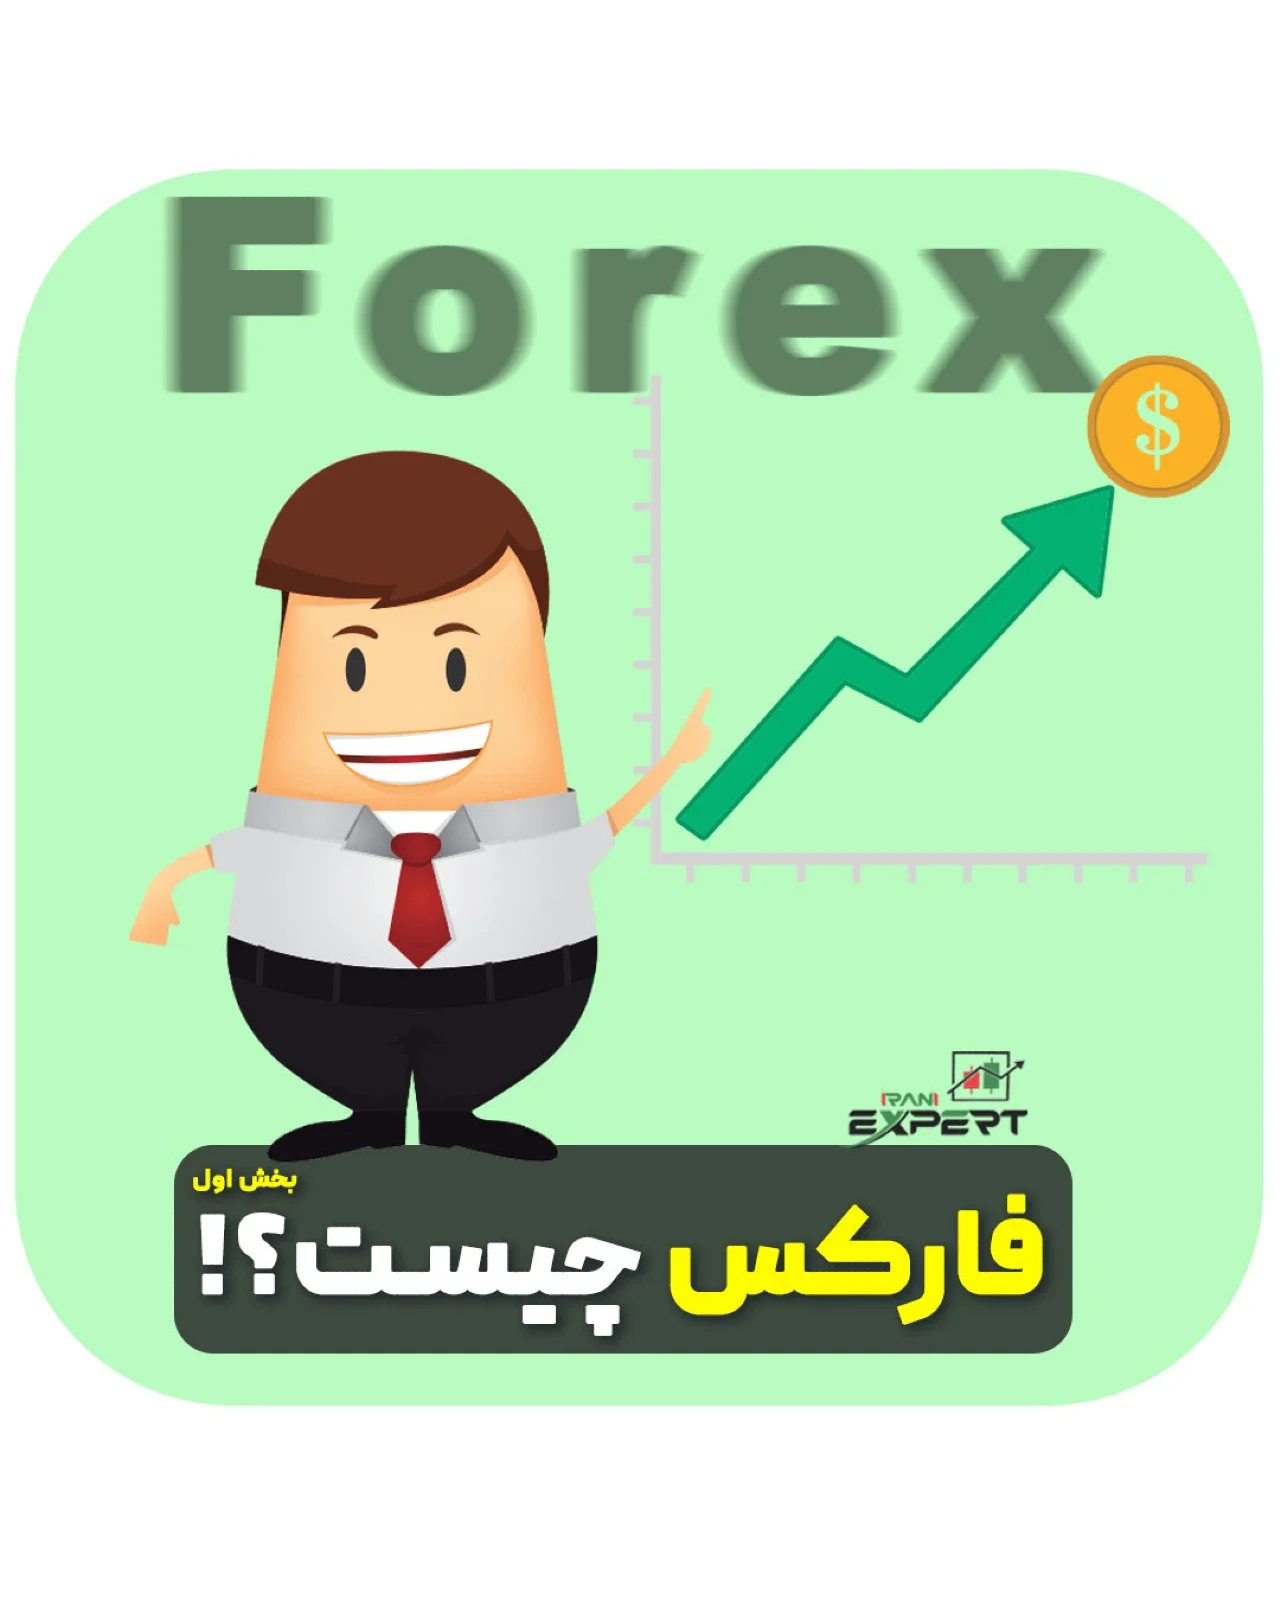 فارکس (Forex) چیست؟ | انواع روش های معاملاتی در فارکس